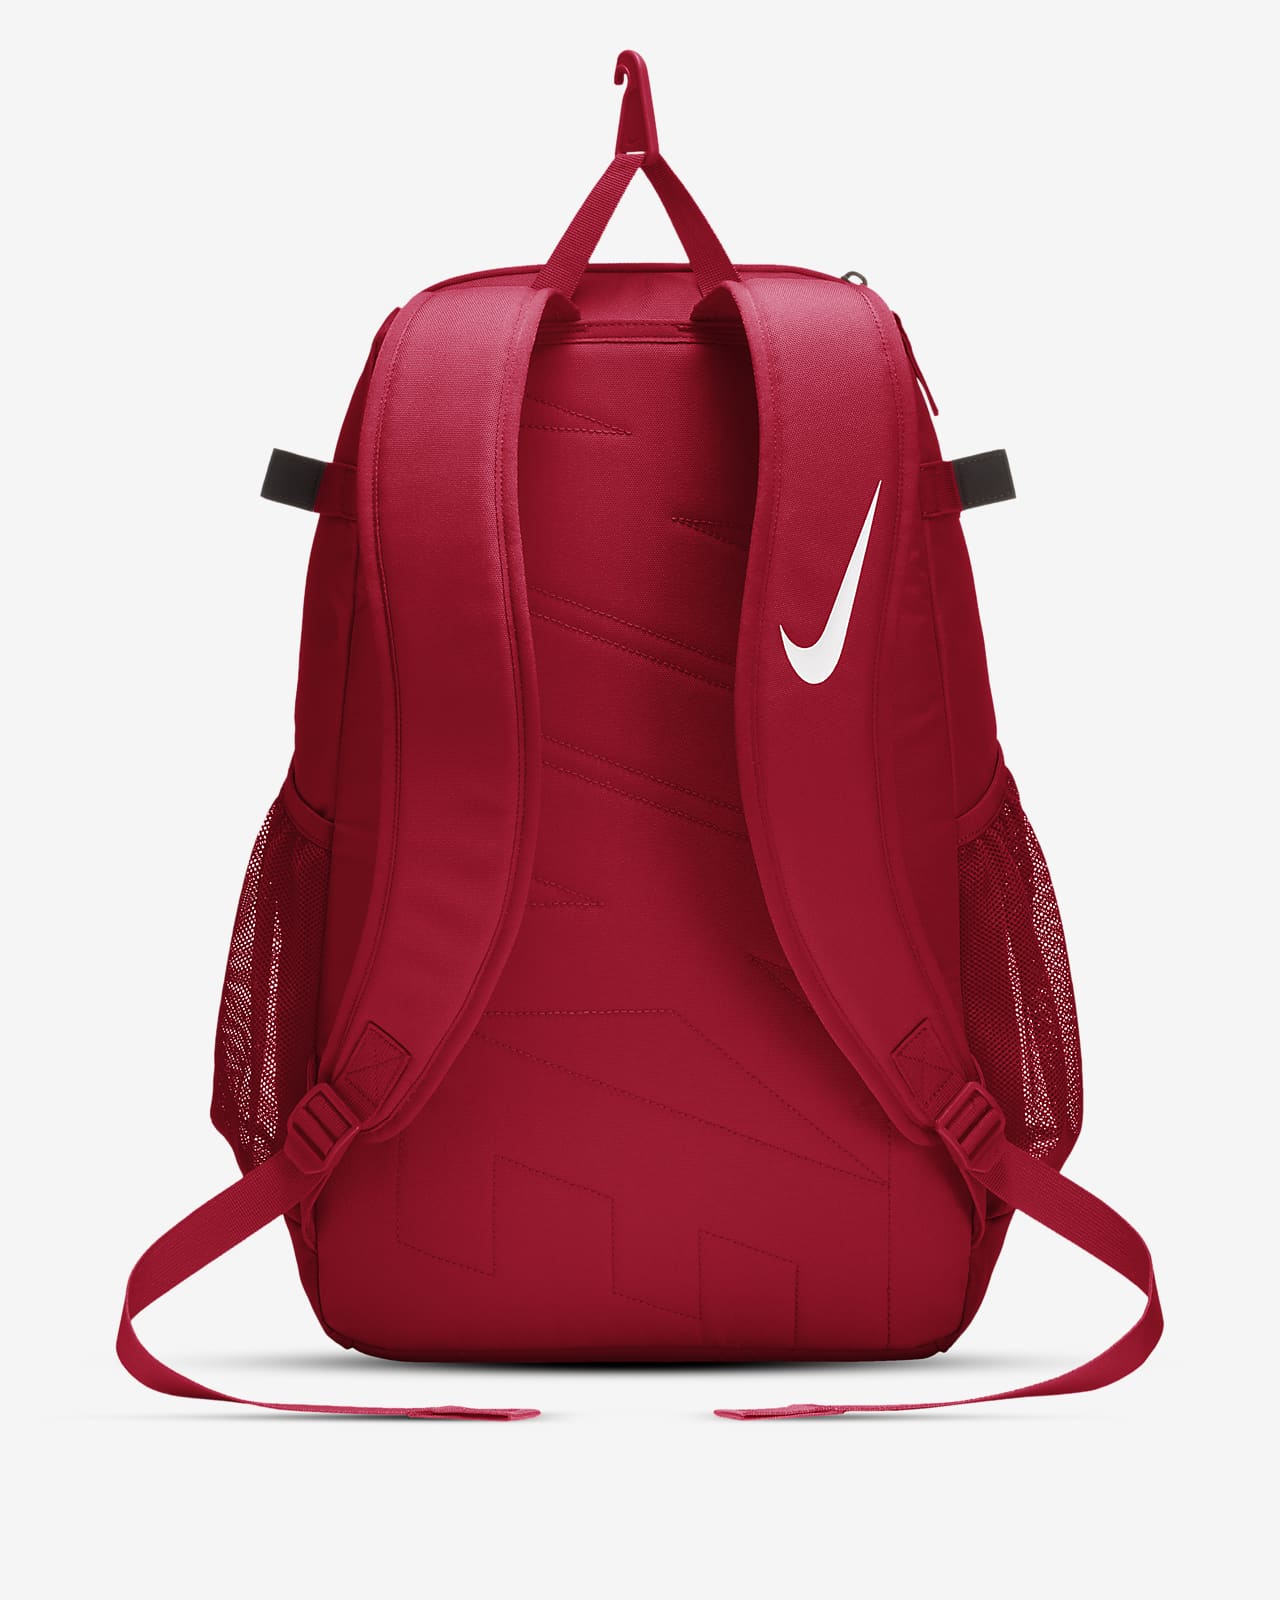 Nike Vapor Select Baseball Backpack 